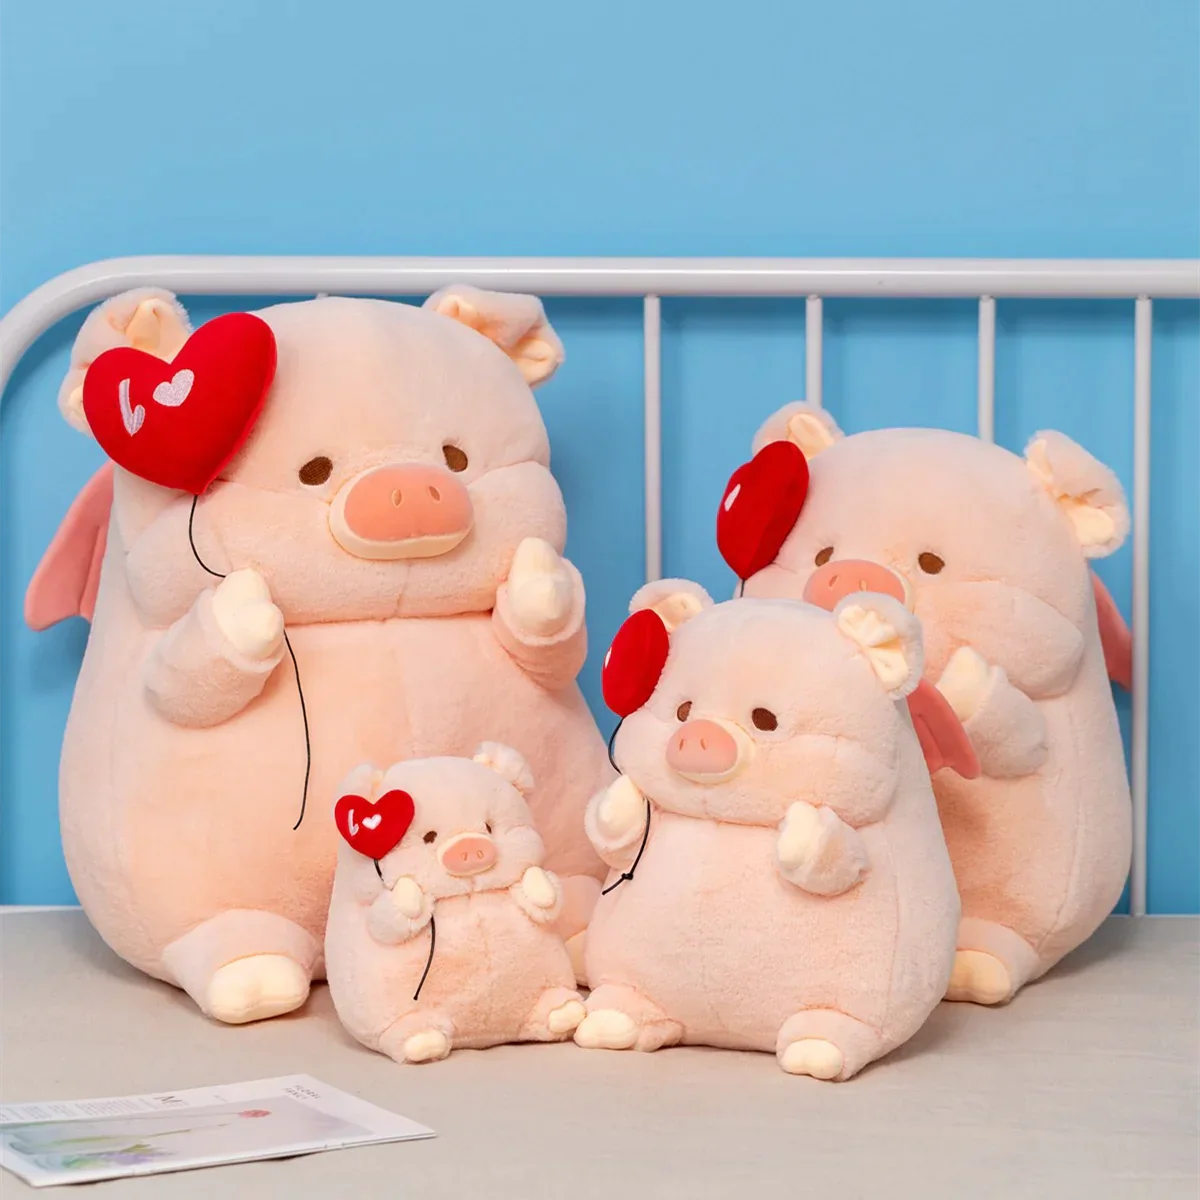 Valentine's Day Love Balloon Pig Plush Toy